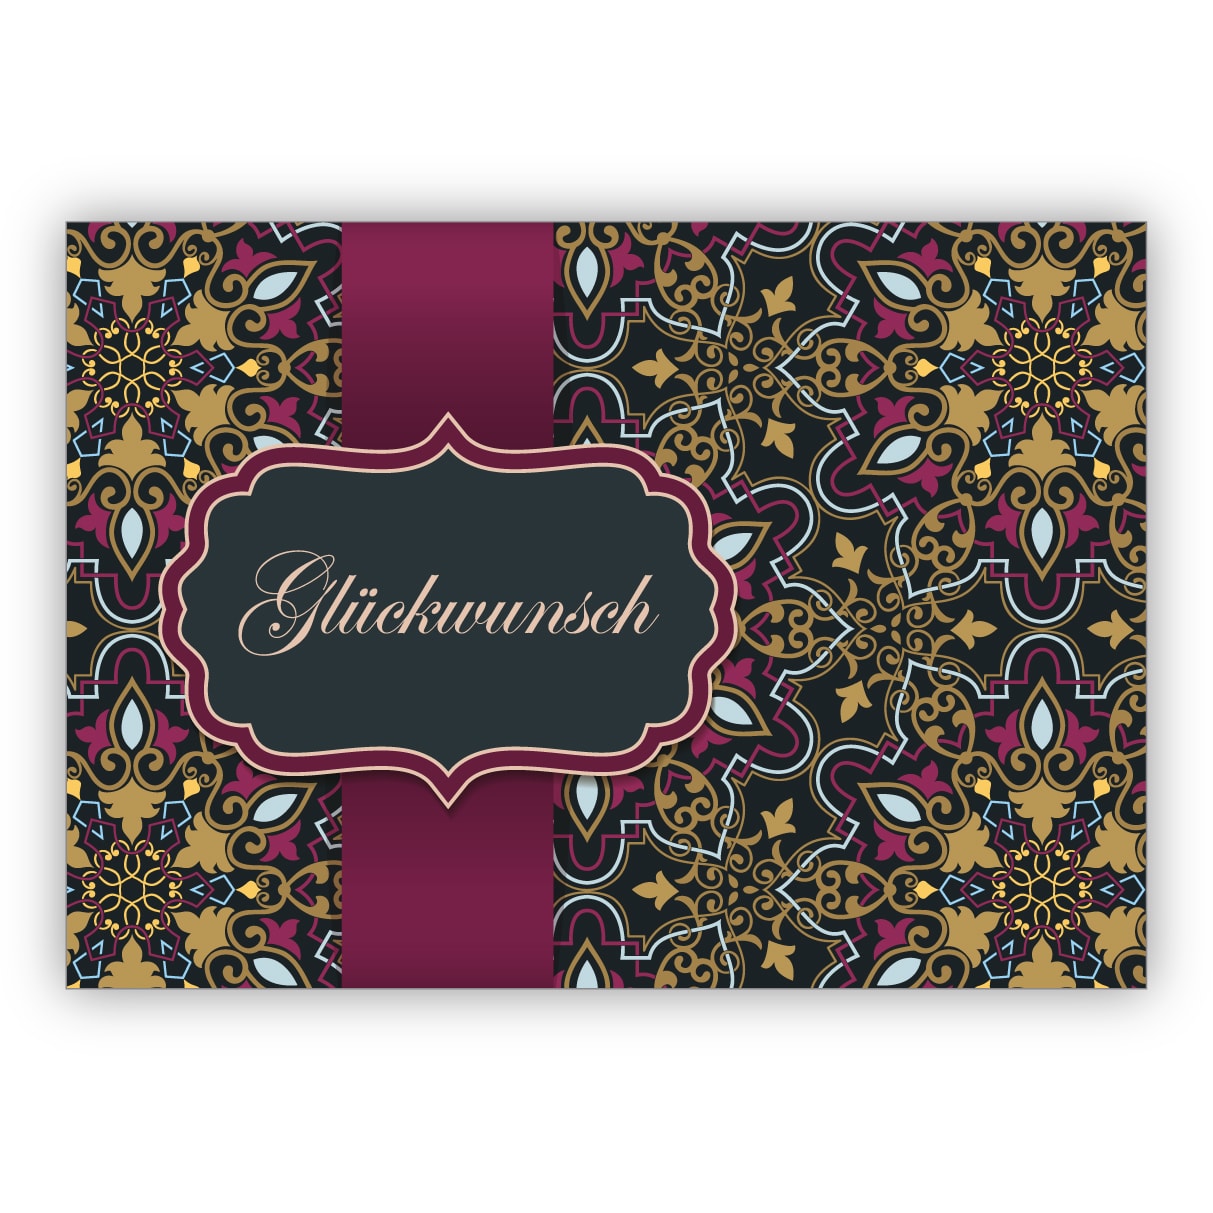 Elegante Grußkarte als Glückwunsch mit arabischem Muster im orientalischen Stil, rosa gold Optik: Glückwunsch